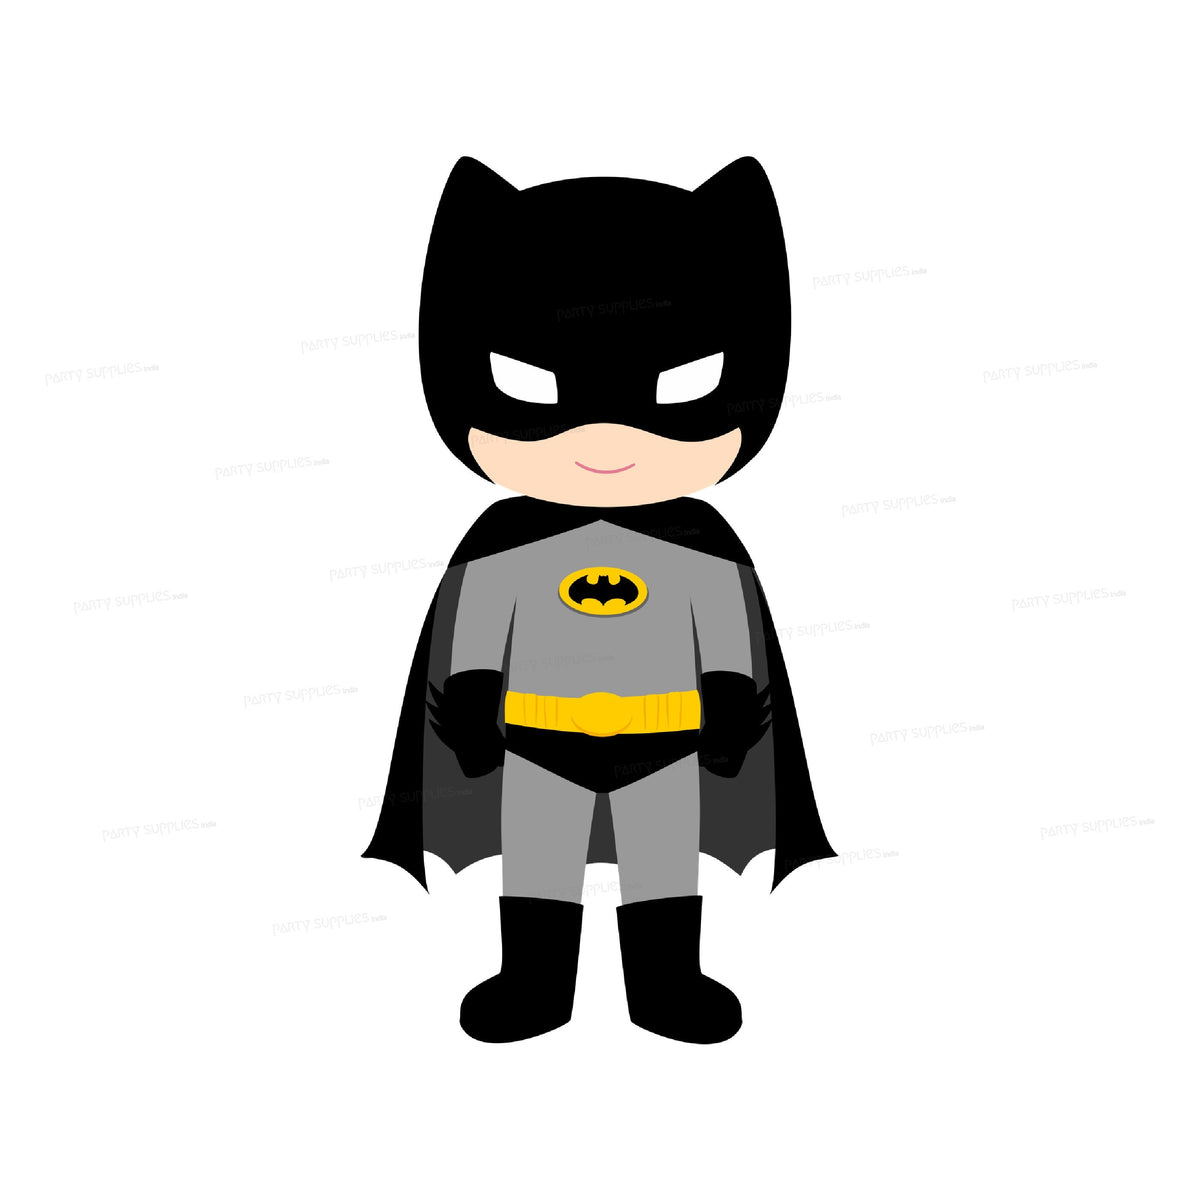 PSI Batman Theme Cutout - 02